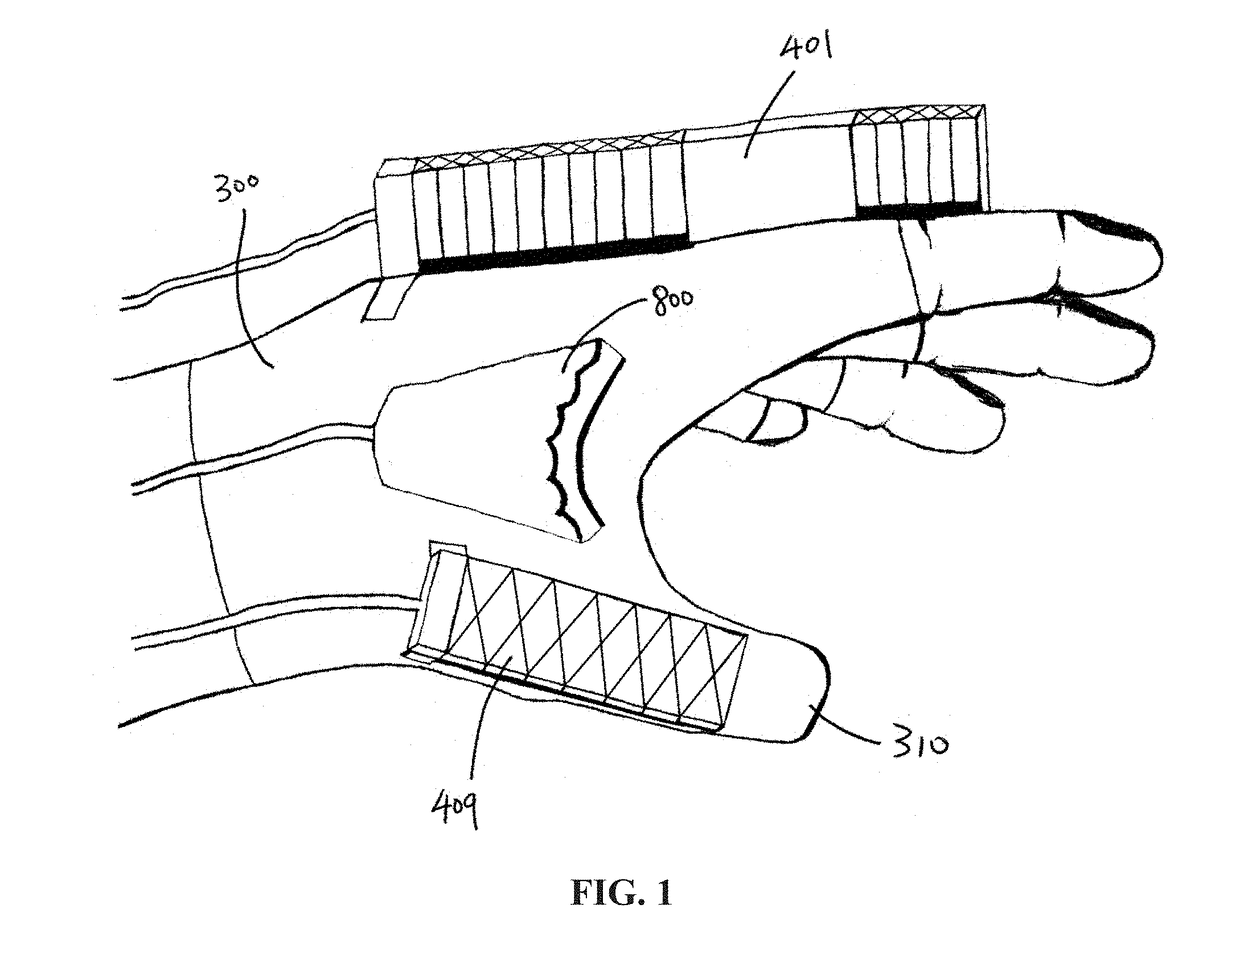 Flexibly driven robotic hands